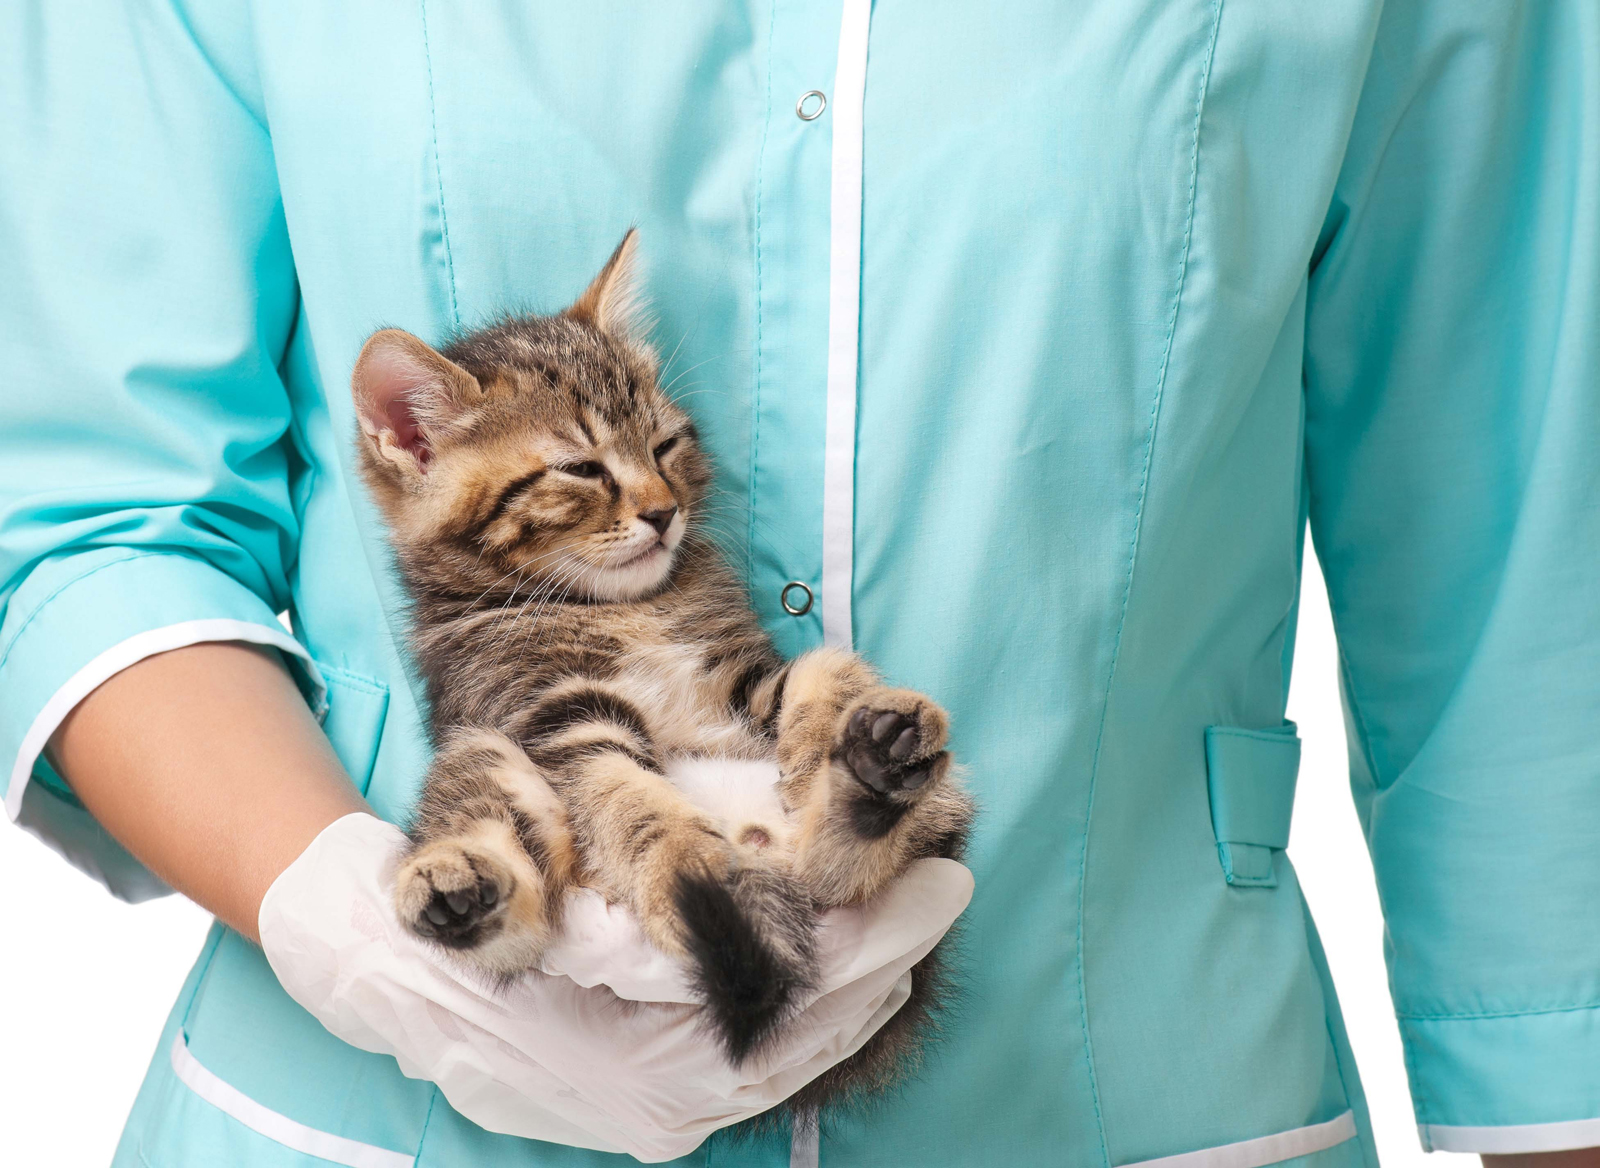 Кошка стерилизованная купить уфа. Кот у ветеринара. Котята в ветеринарной клинике. Ветеринар с кошкой. Кашки ветираниря.